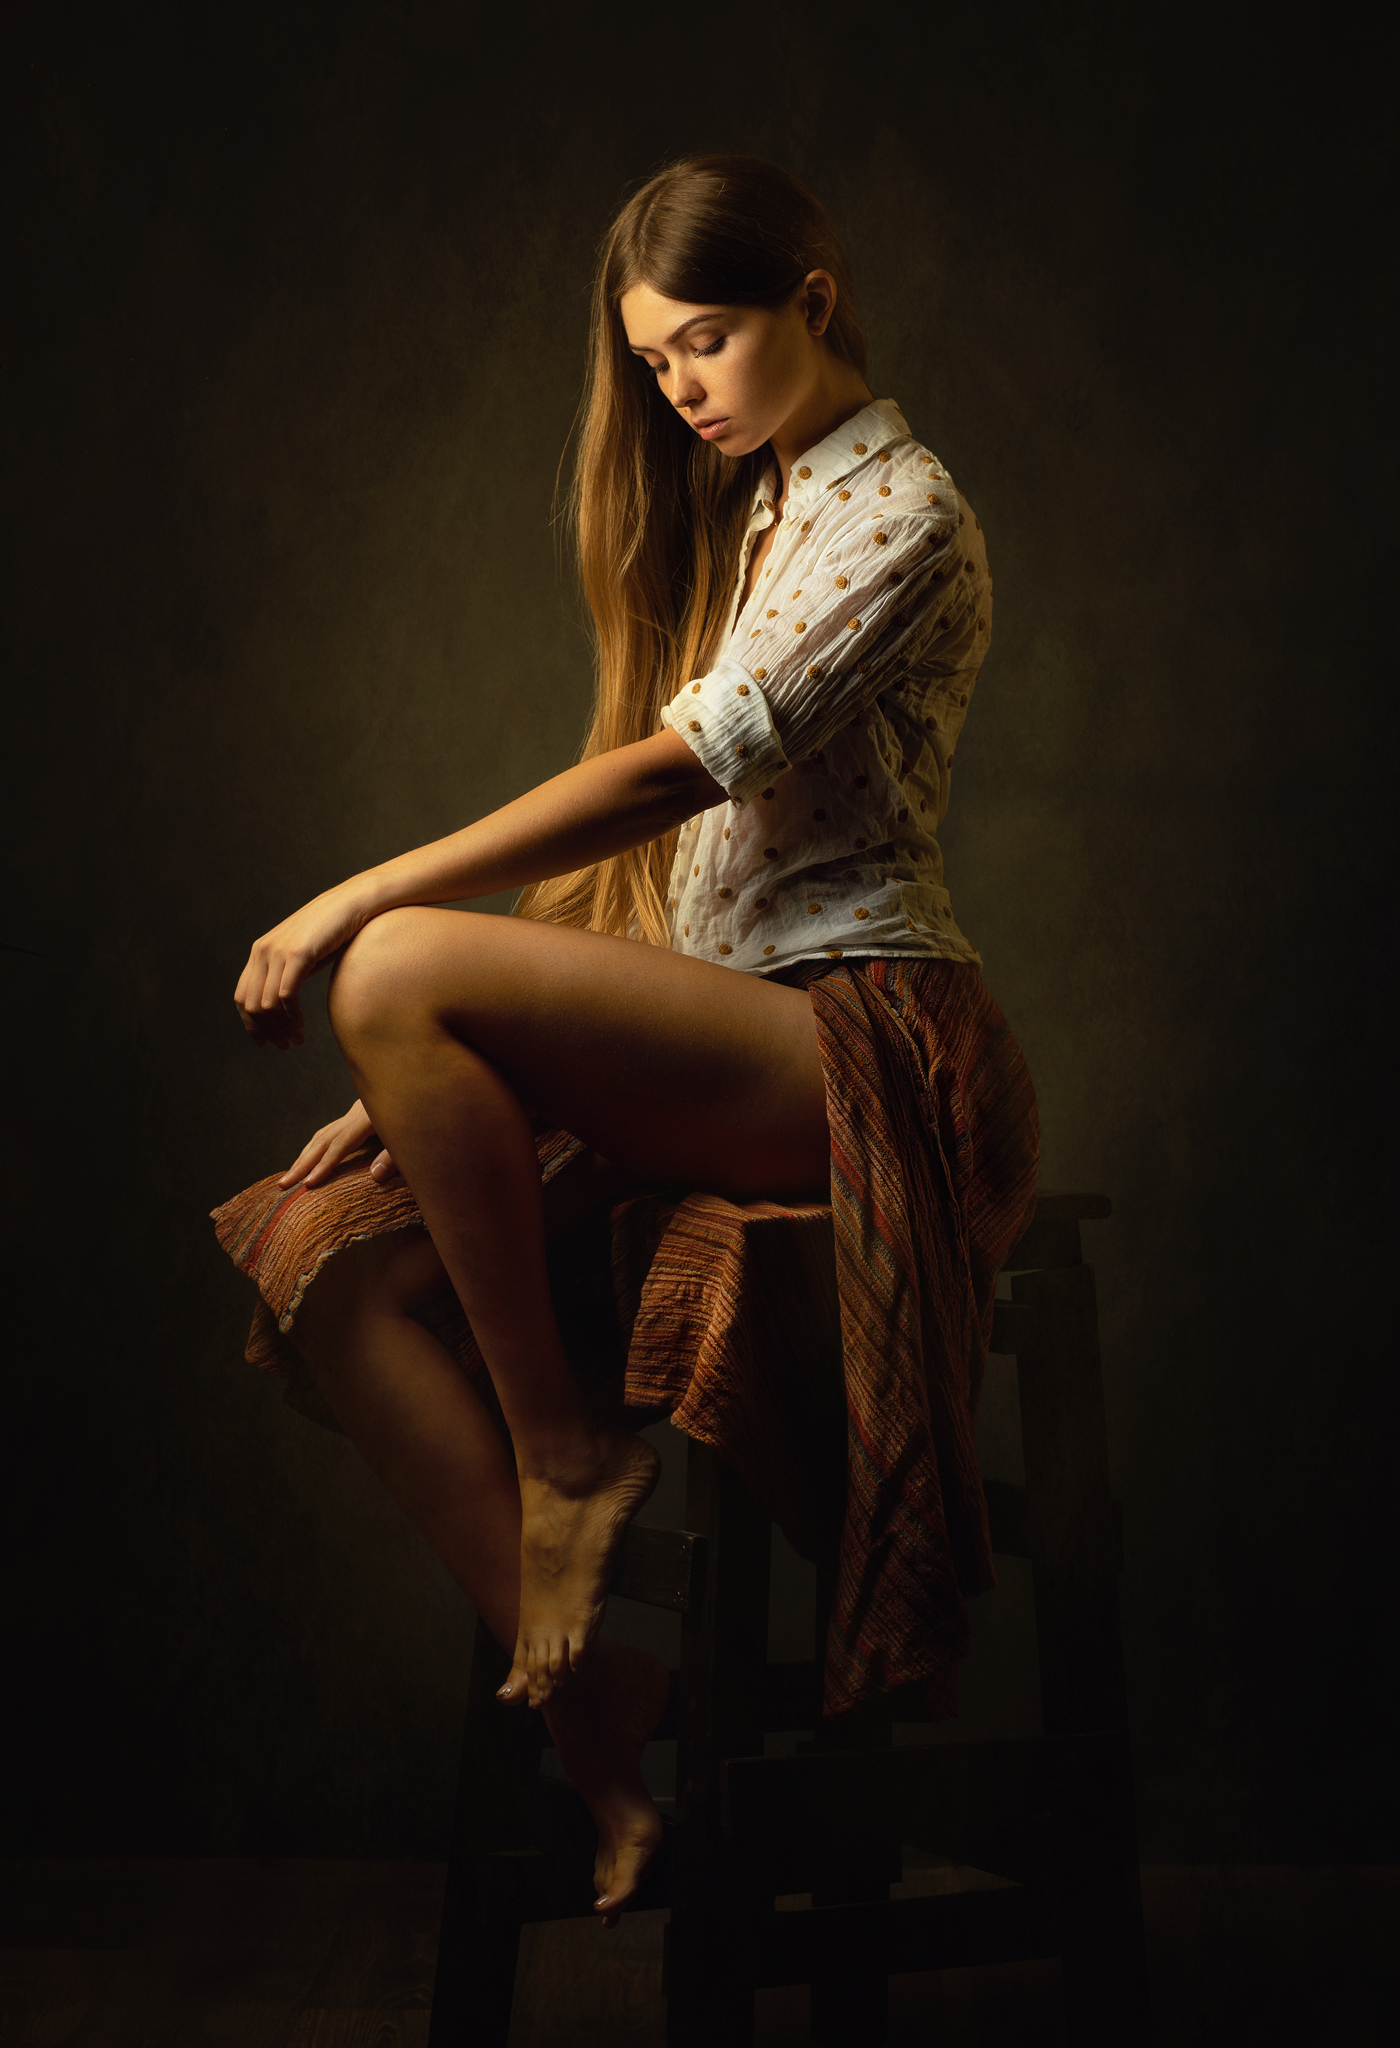 Zachar Rise Women Brunette Long Hair Shirt Skirt Barefoot Chair Warm Light Studio Women Indoors Legs 1400x2048